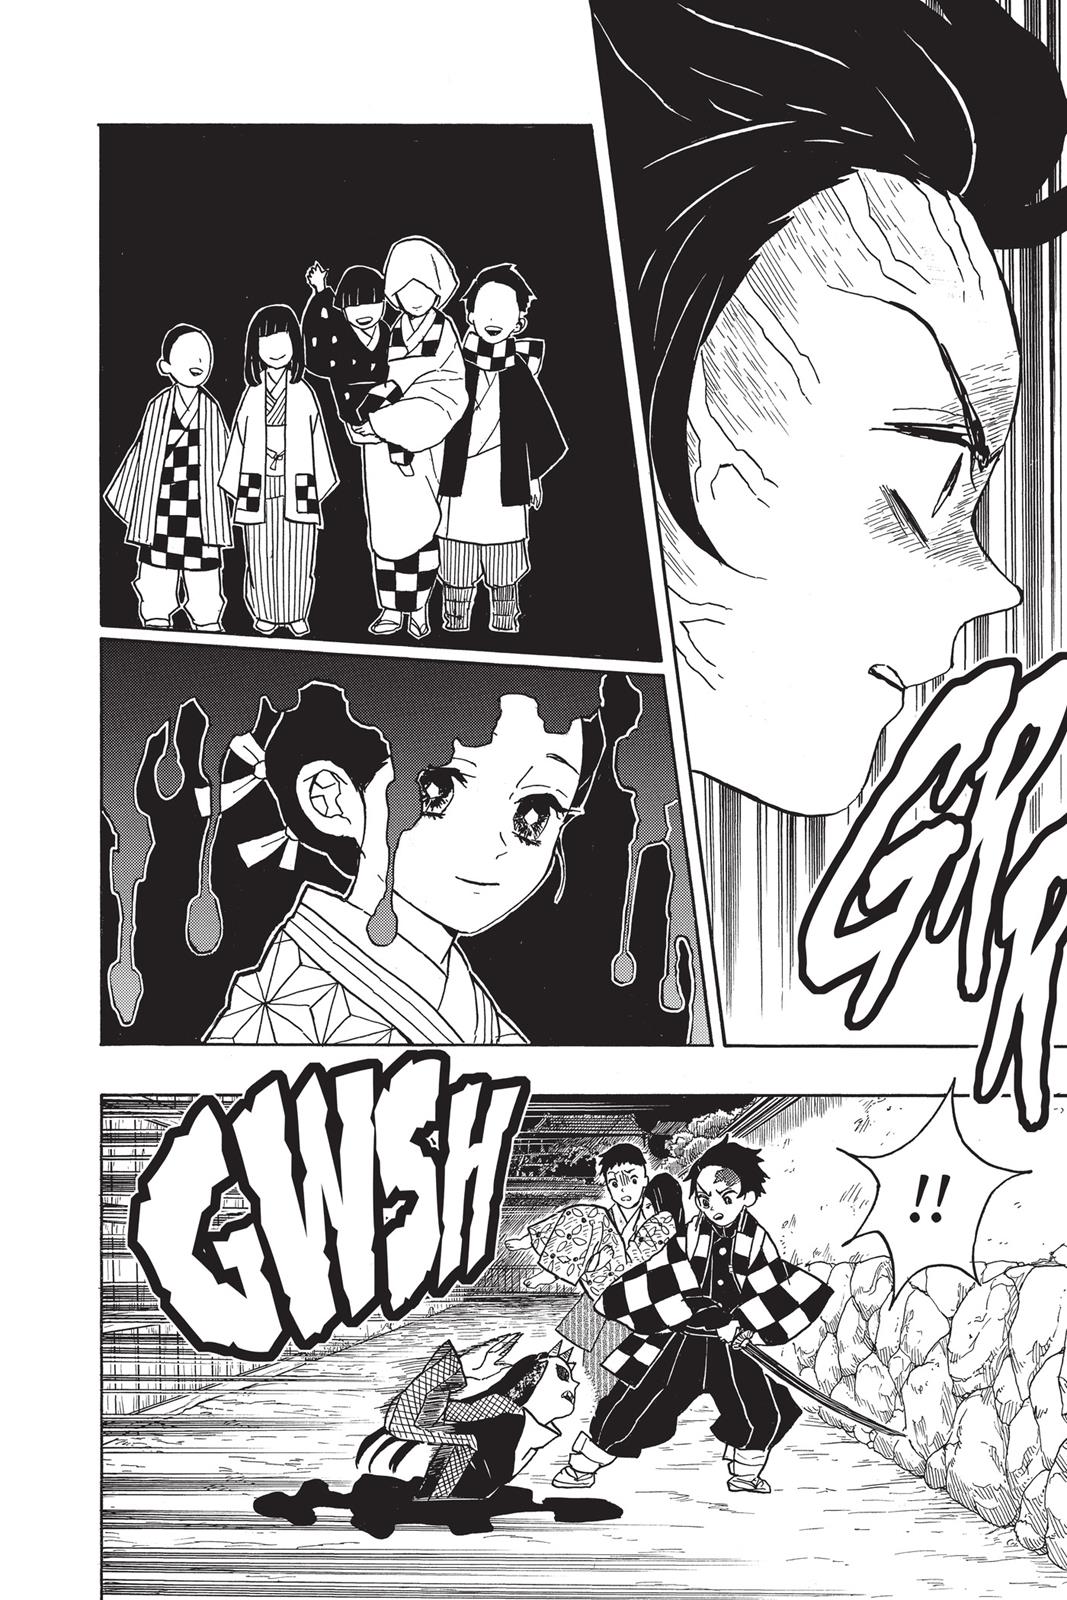 Demon Slayer Manga Manga Chapter - 11 - image 9